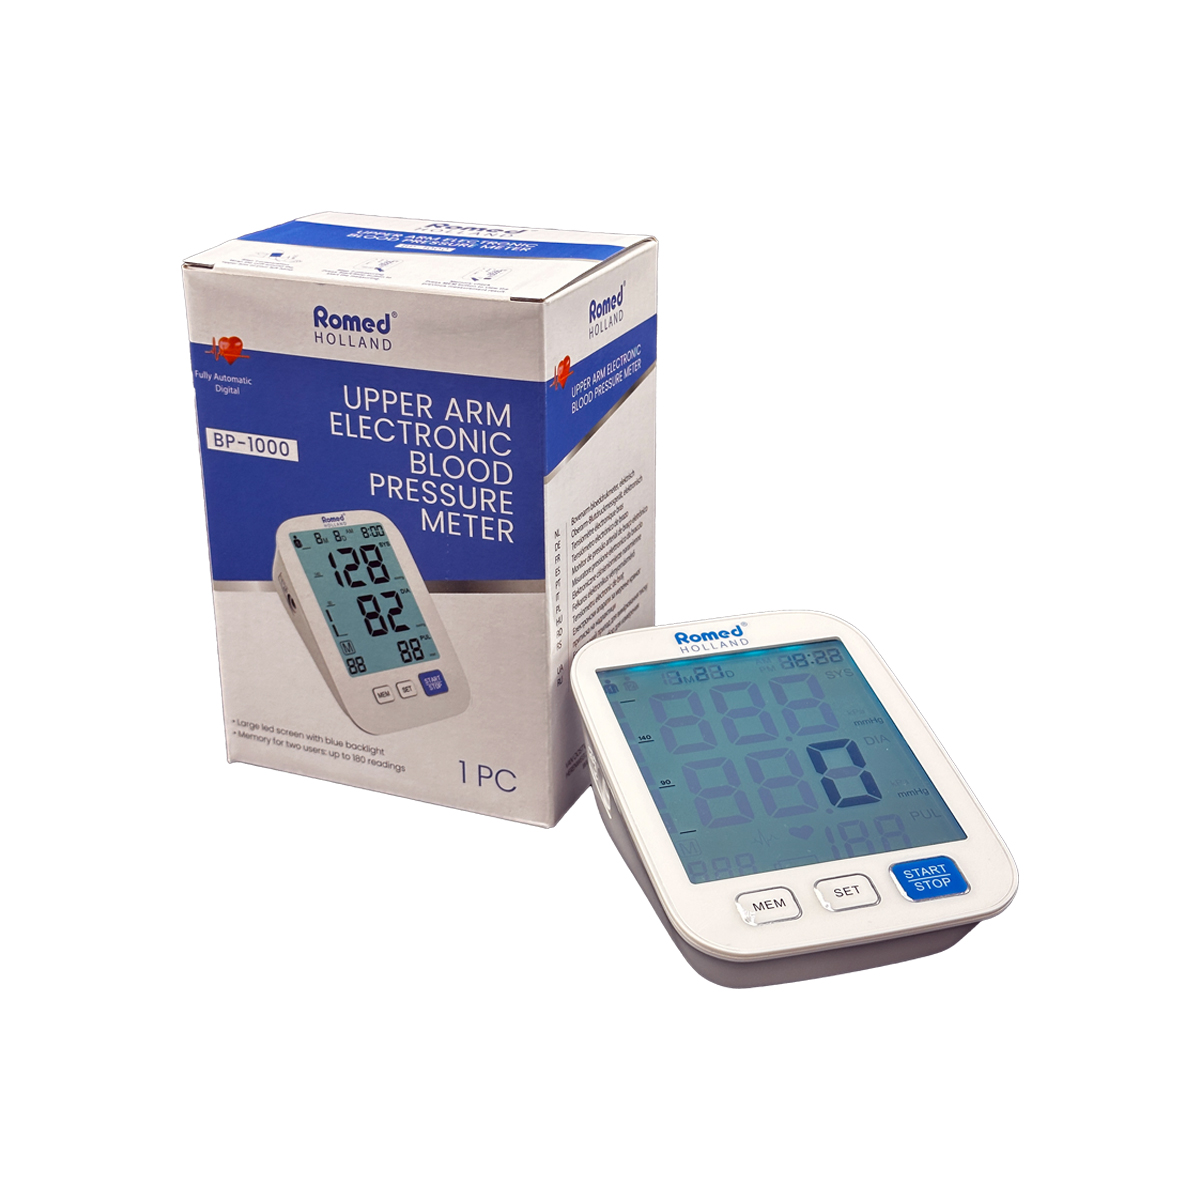 Blood pressure meters